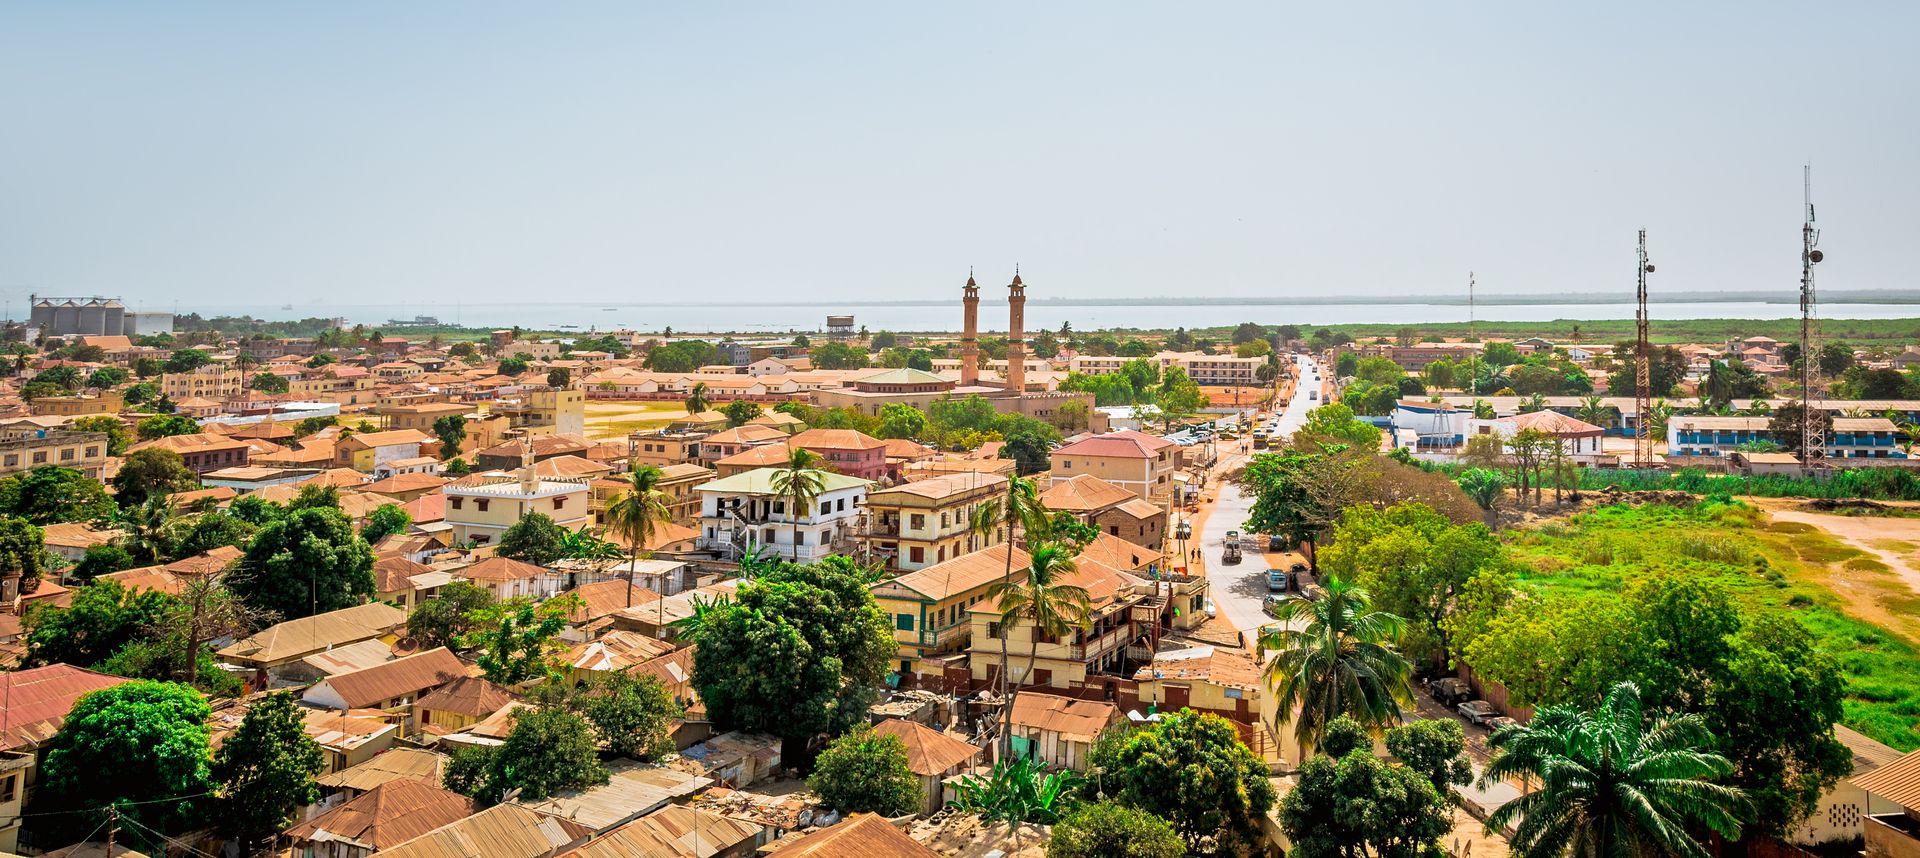 City-Gambia-Timeline-PolyglotClub.jpg